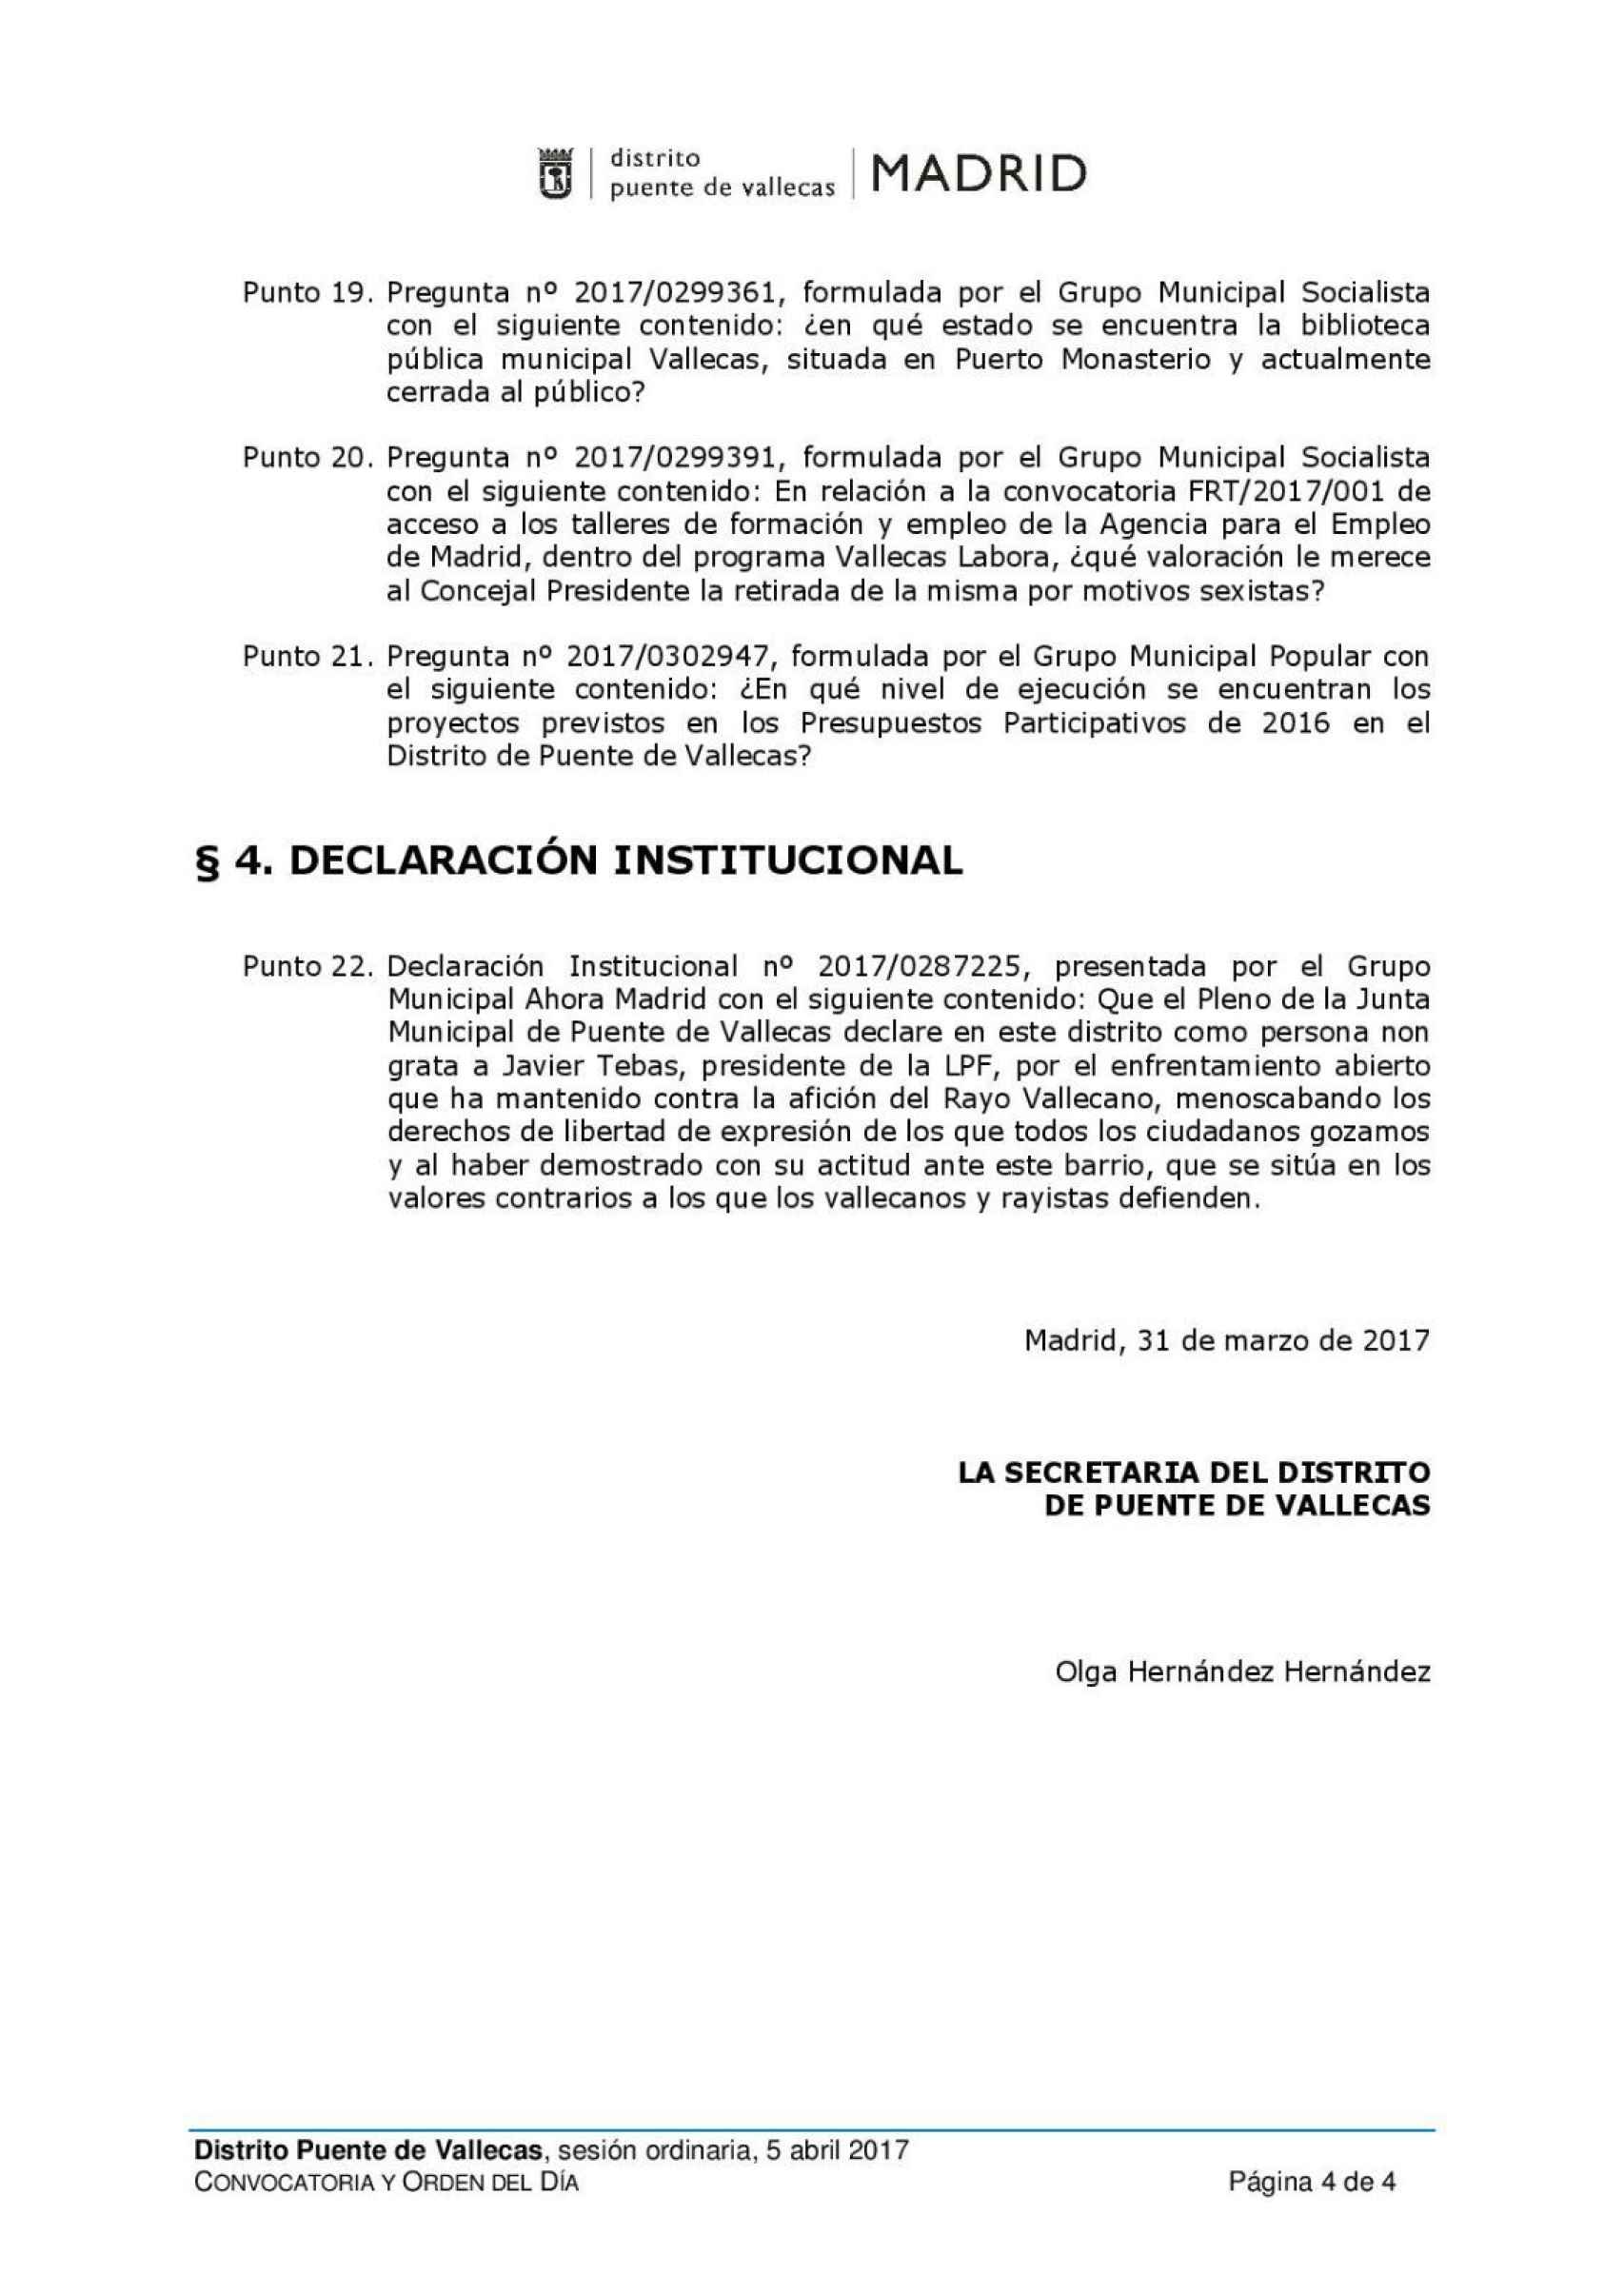 Borrador del orden del día original del Pleno y la declaración institucional.